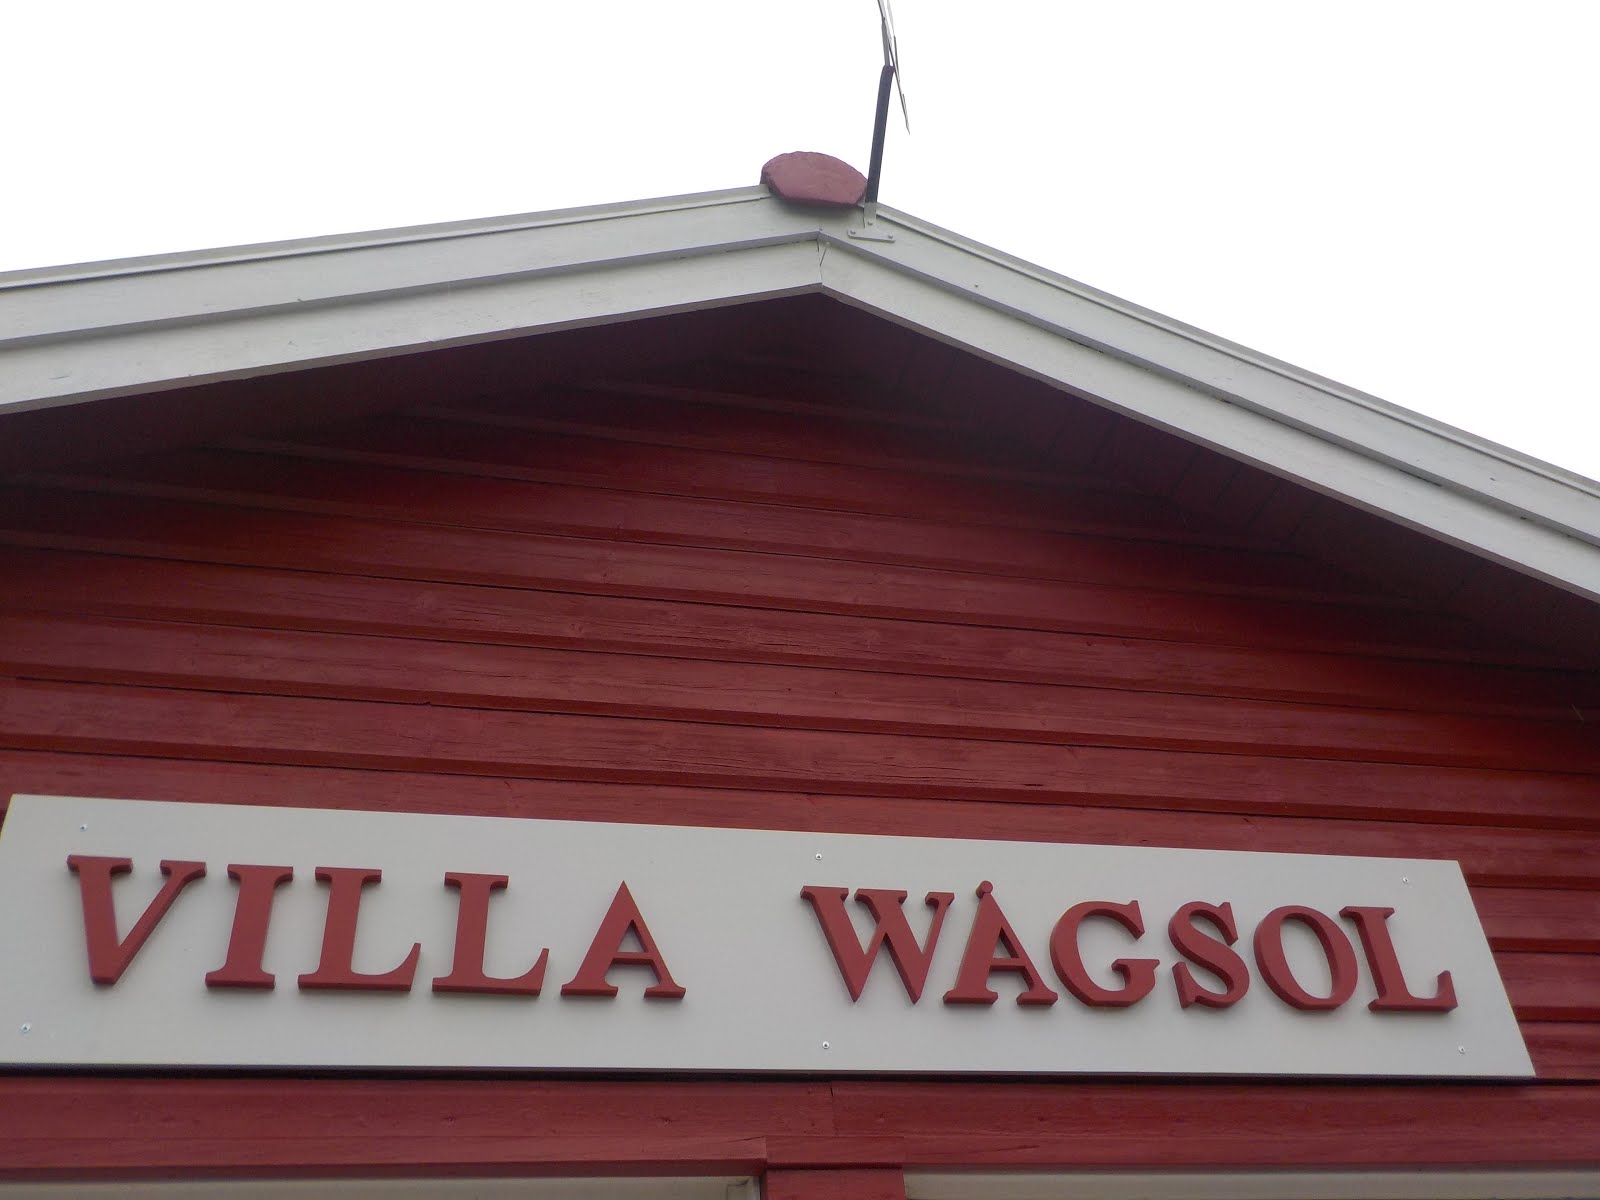 Villa Wågsol skylten